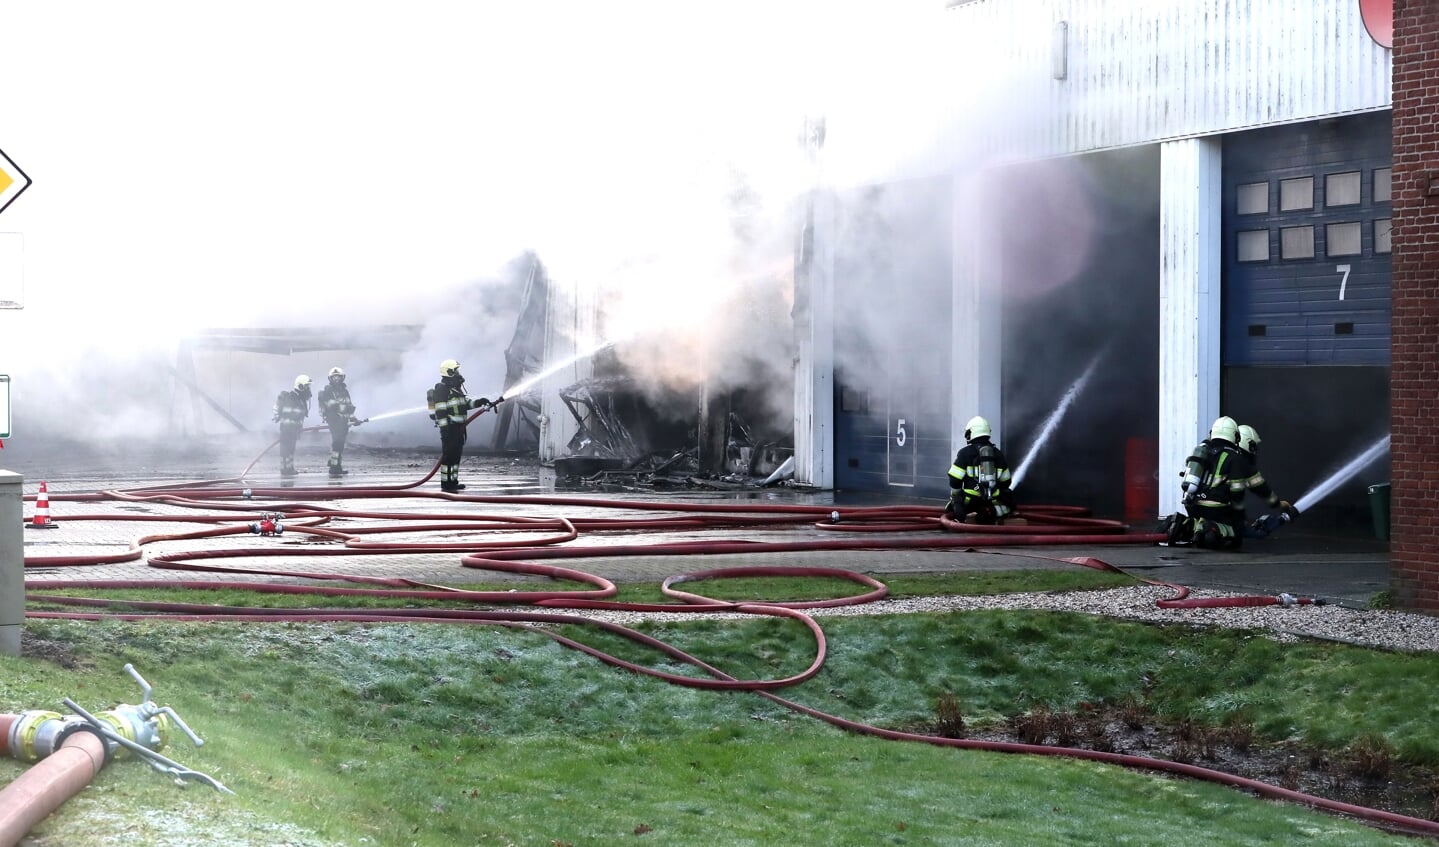 De brandweer bij Maaskant Reizen. (Foto: Hans van der Poel)